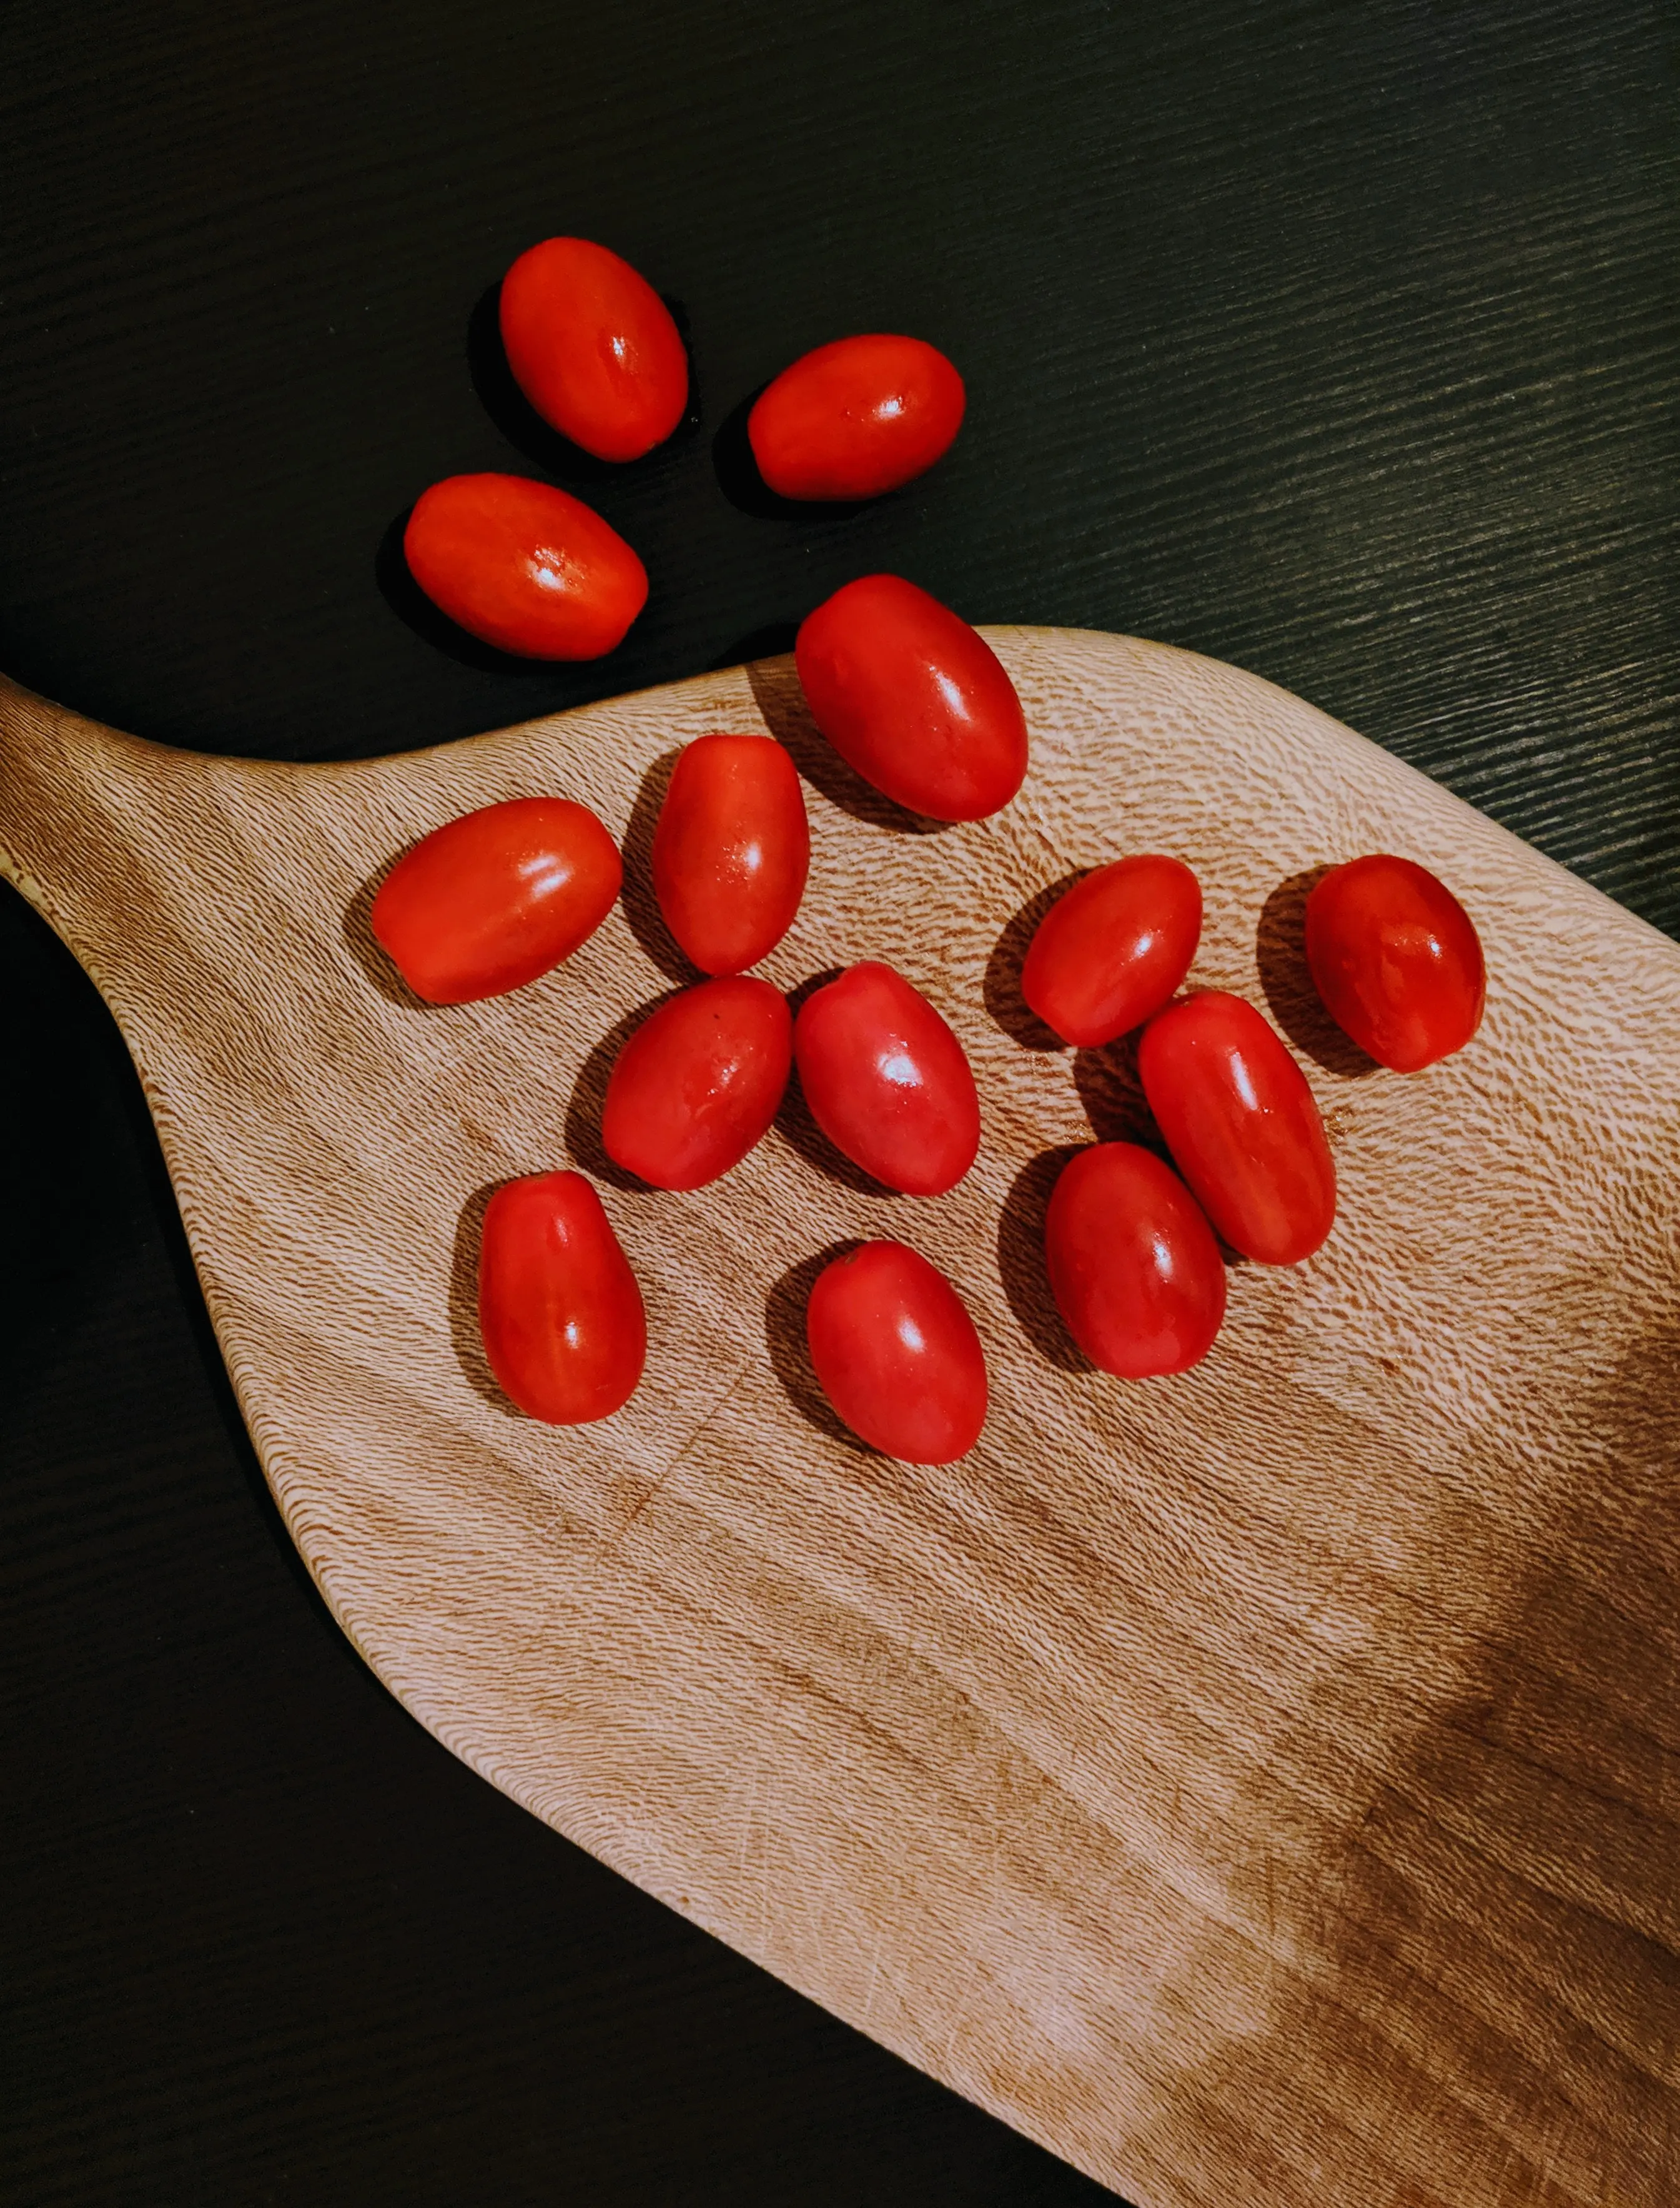 스테비아 방울 토마토 가격